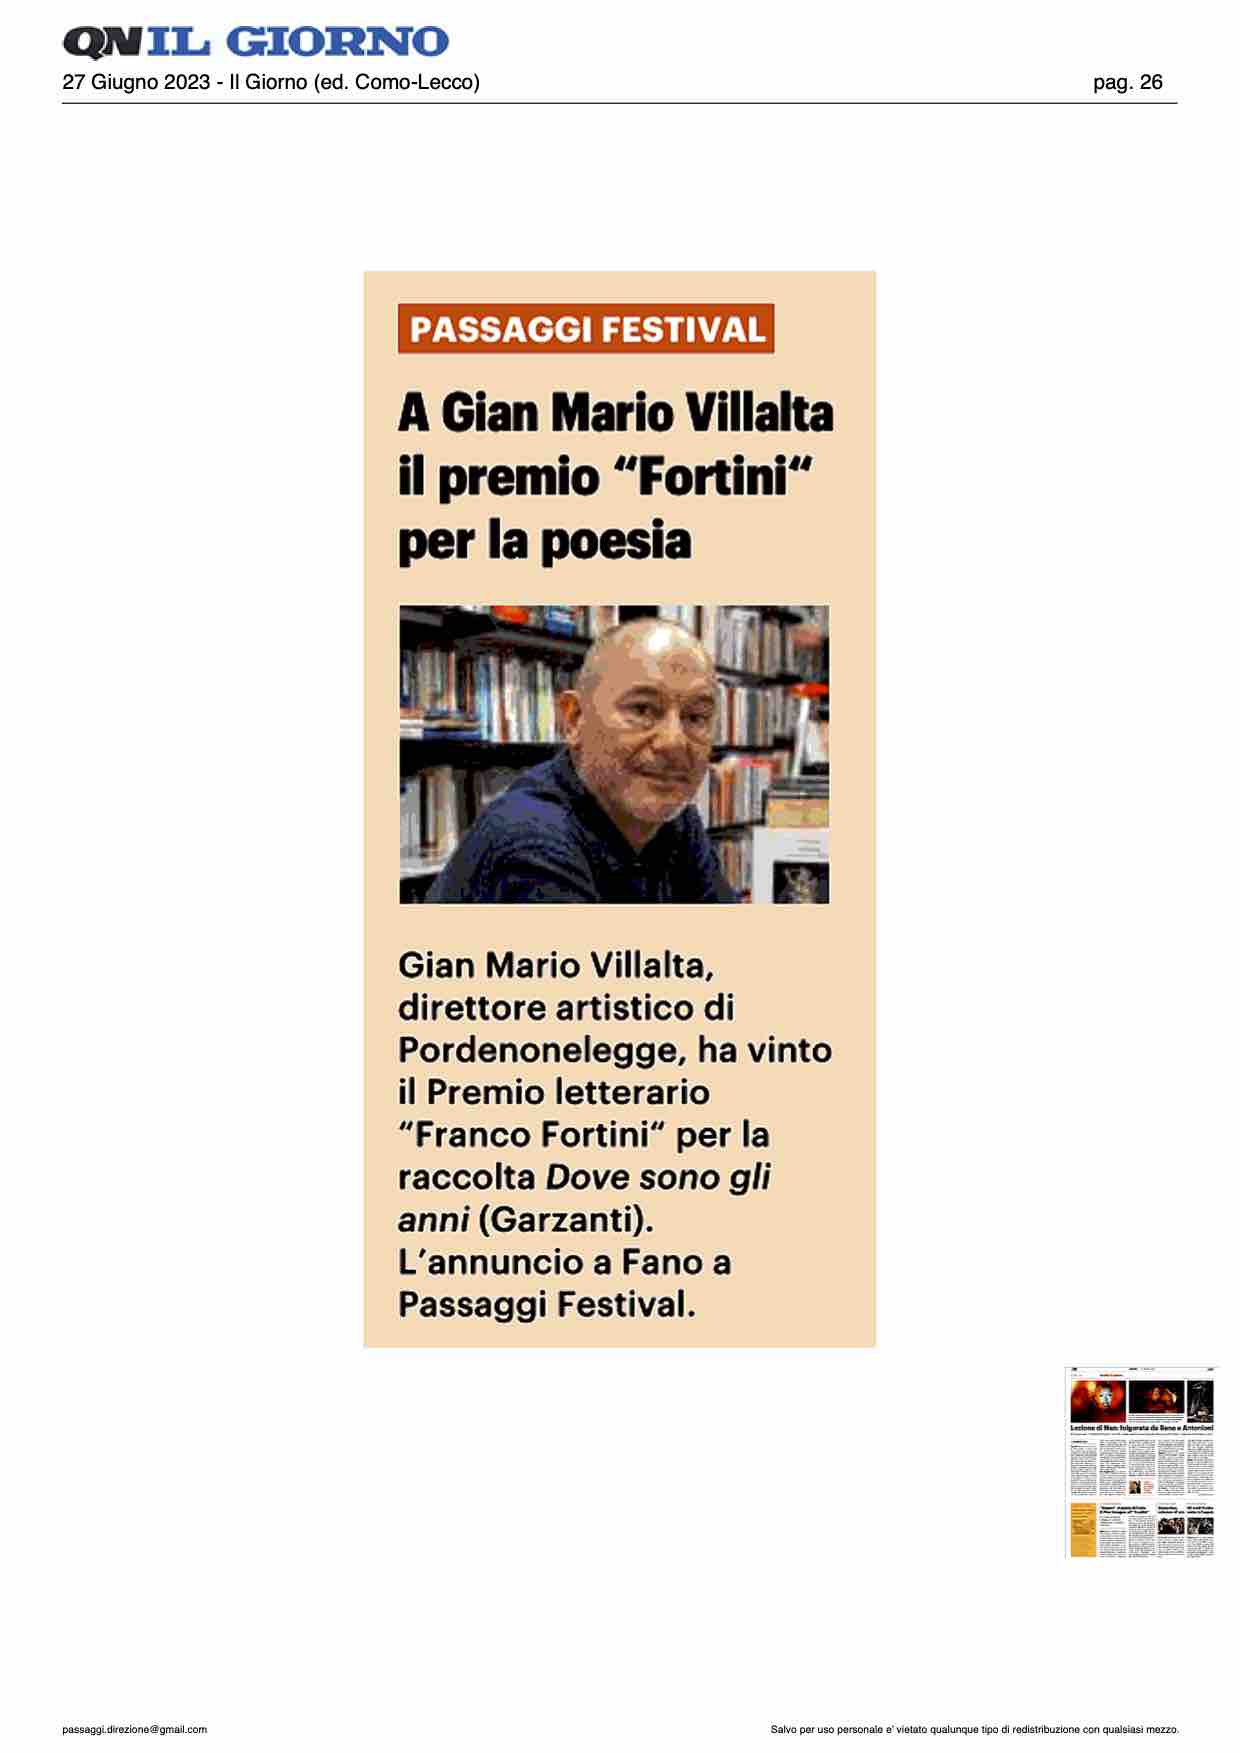 Il Giorno – A Gian Mario Villalta il premio “Fortini” per la poesia